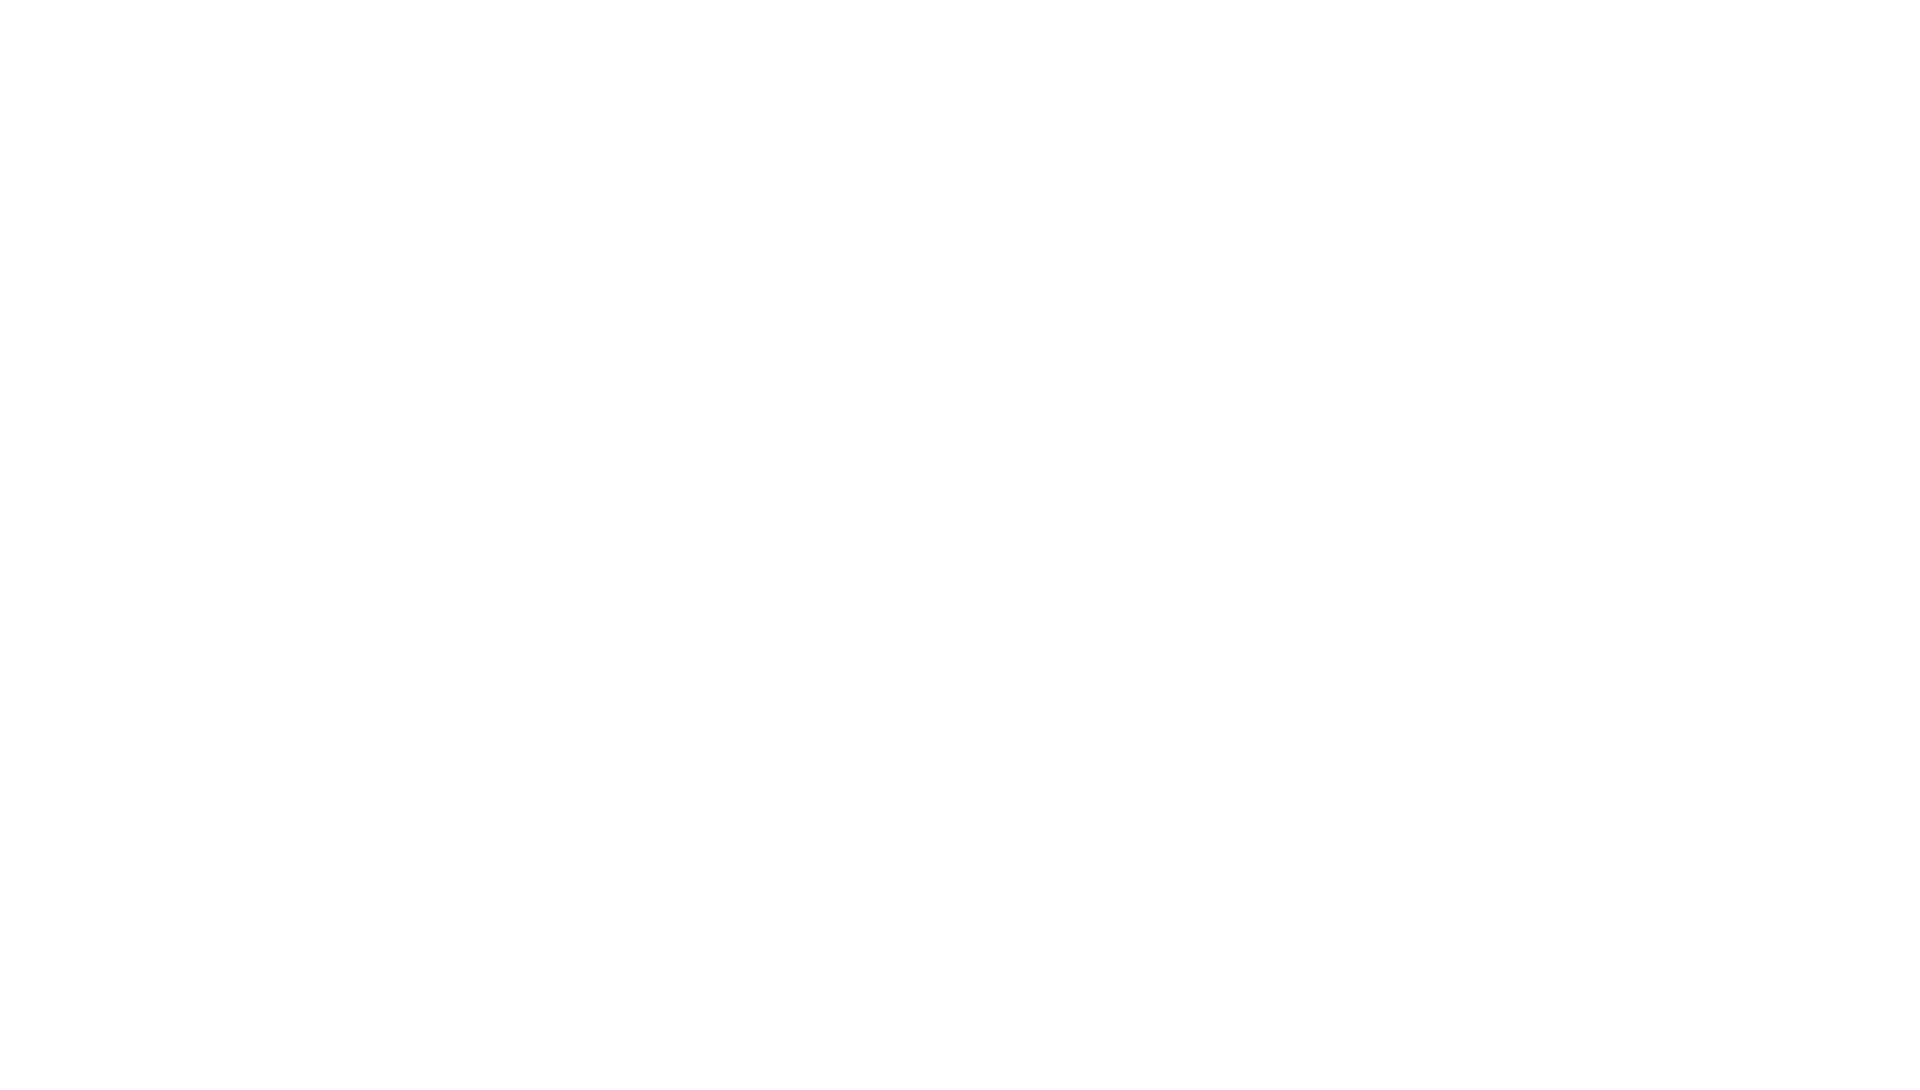 Mac's Chophouse - Marietta